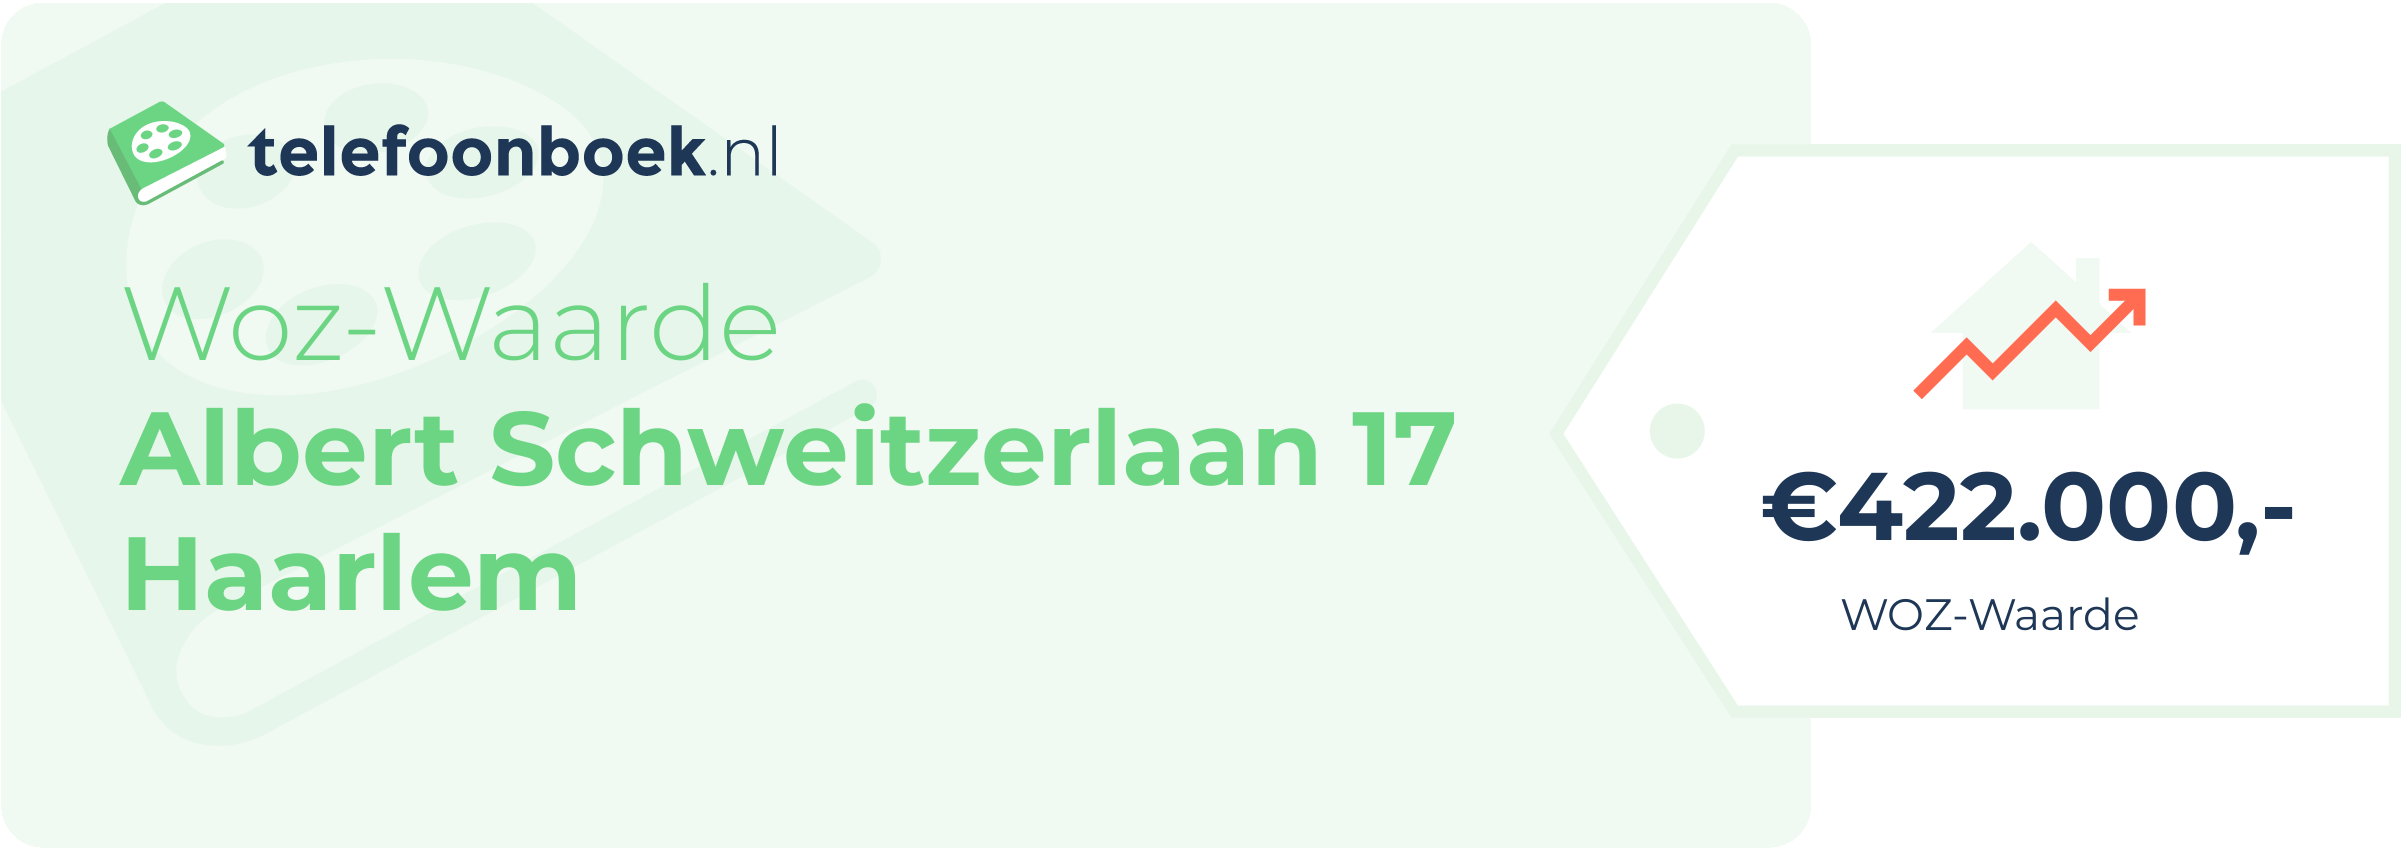 WOZ-waarde Albert Schweitzerlaan 17 Haarlem